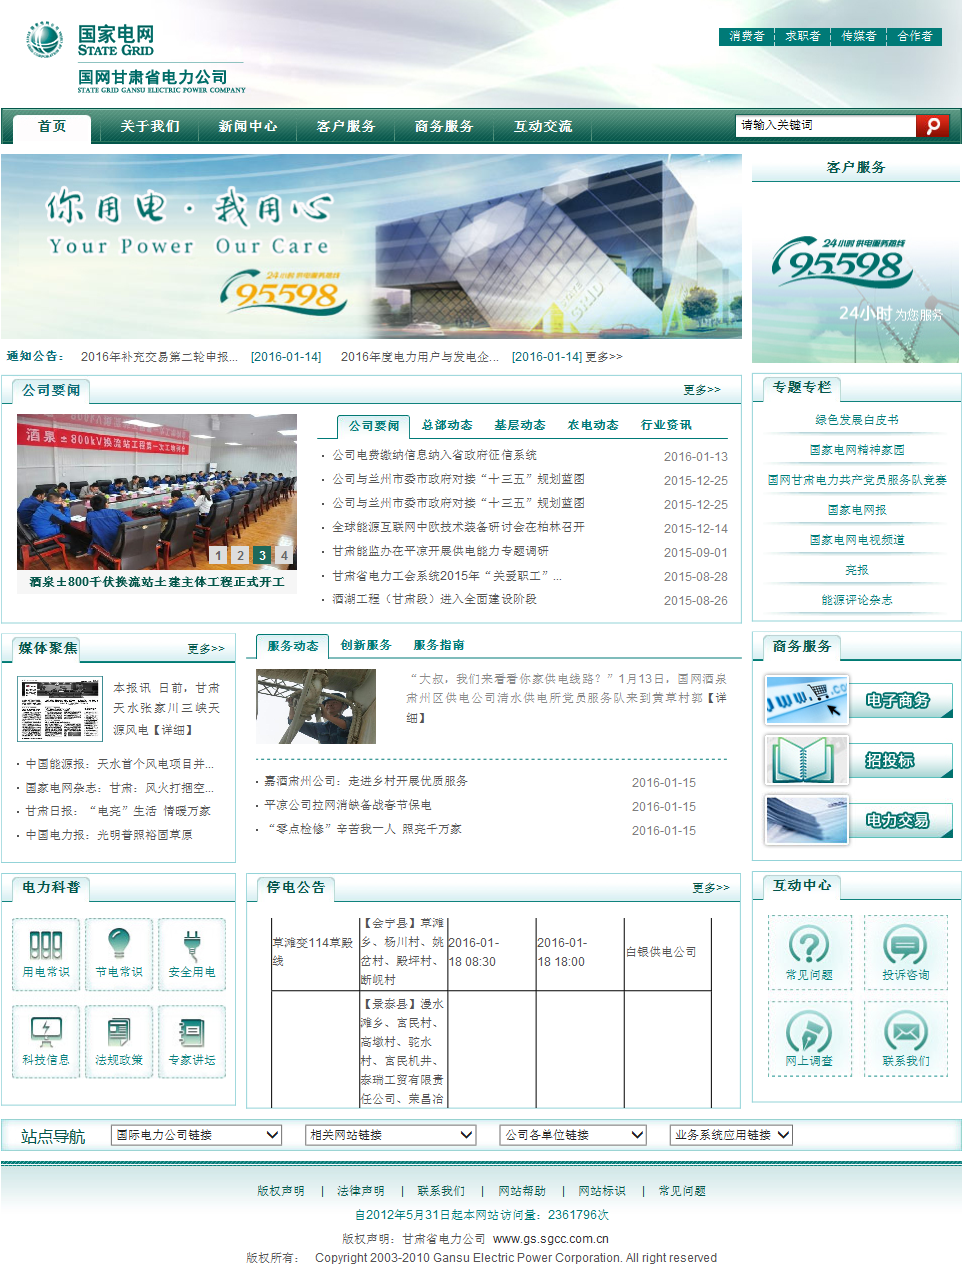 xpaper数字报刊系统系列产品签约甘肃电力集团